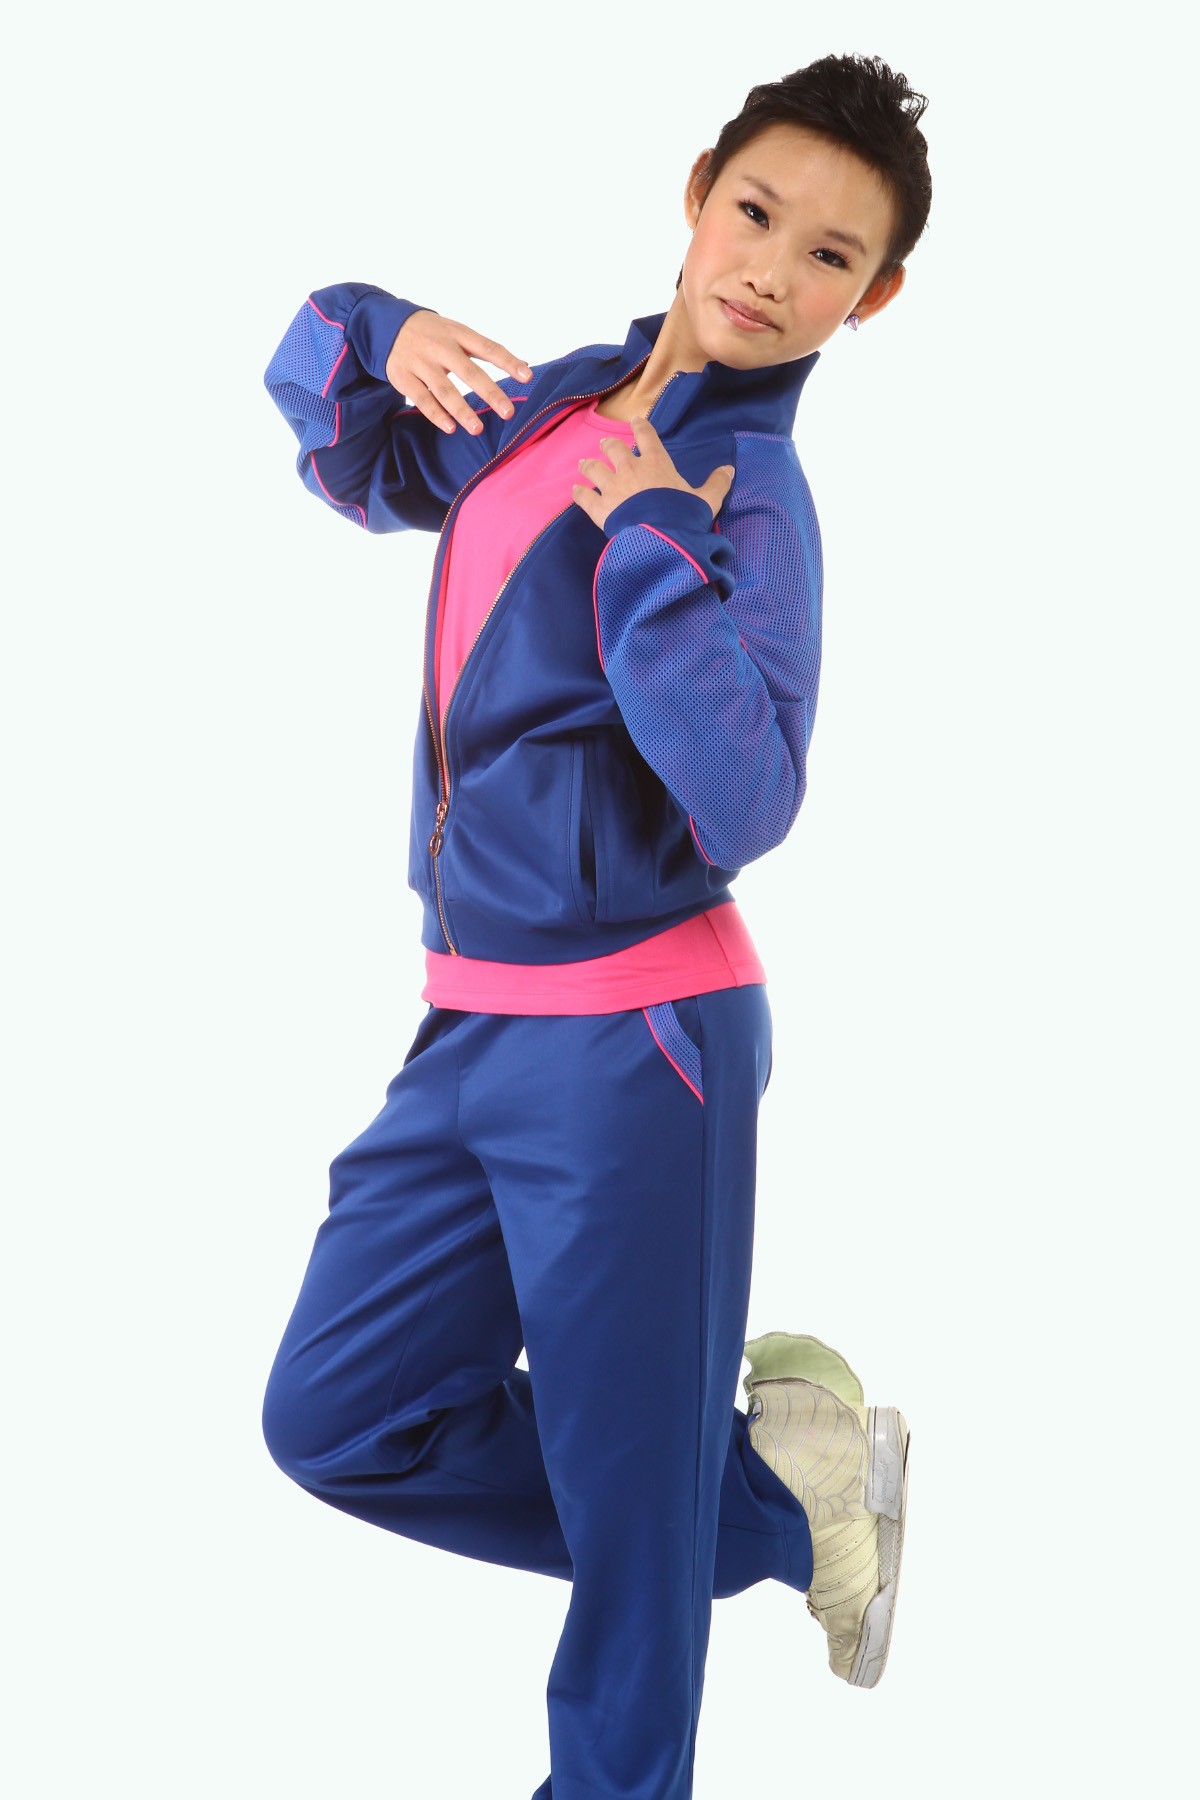 青春时尚 XAMAS 滑冰教练长裤 - 蓝色